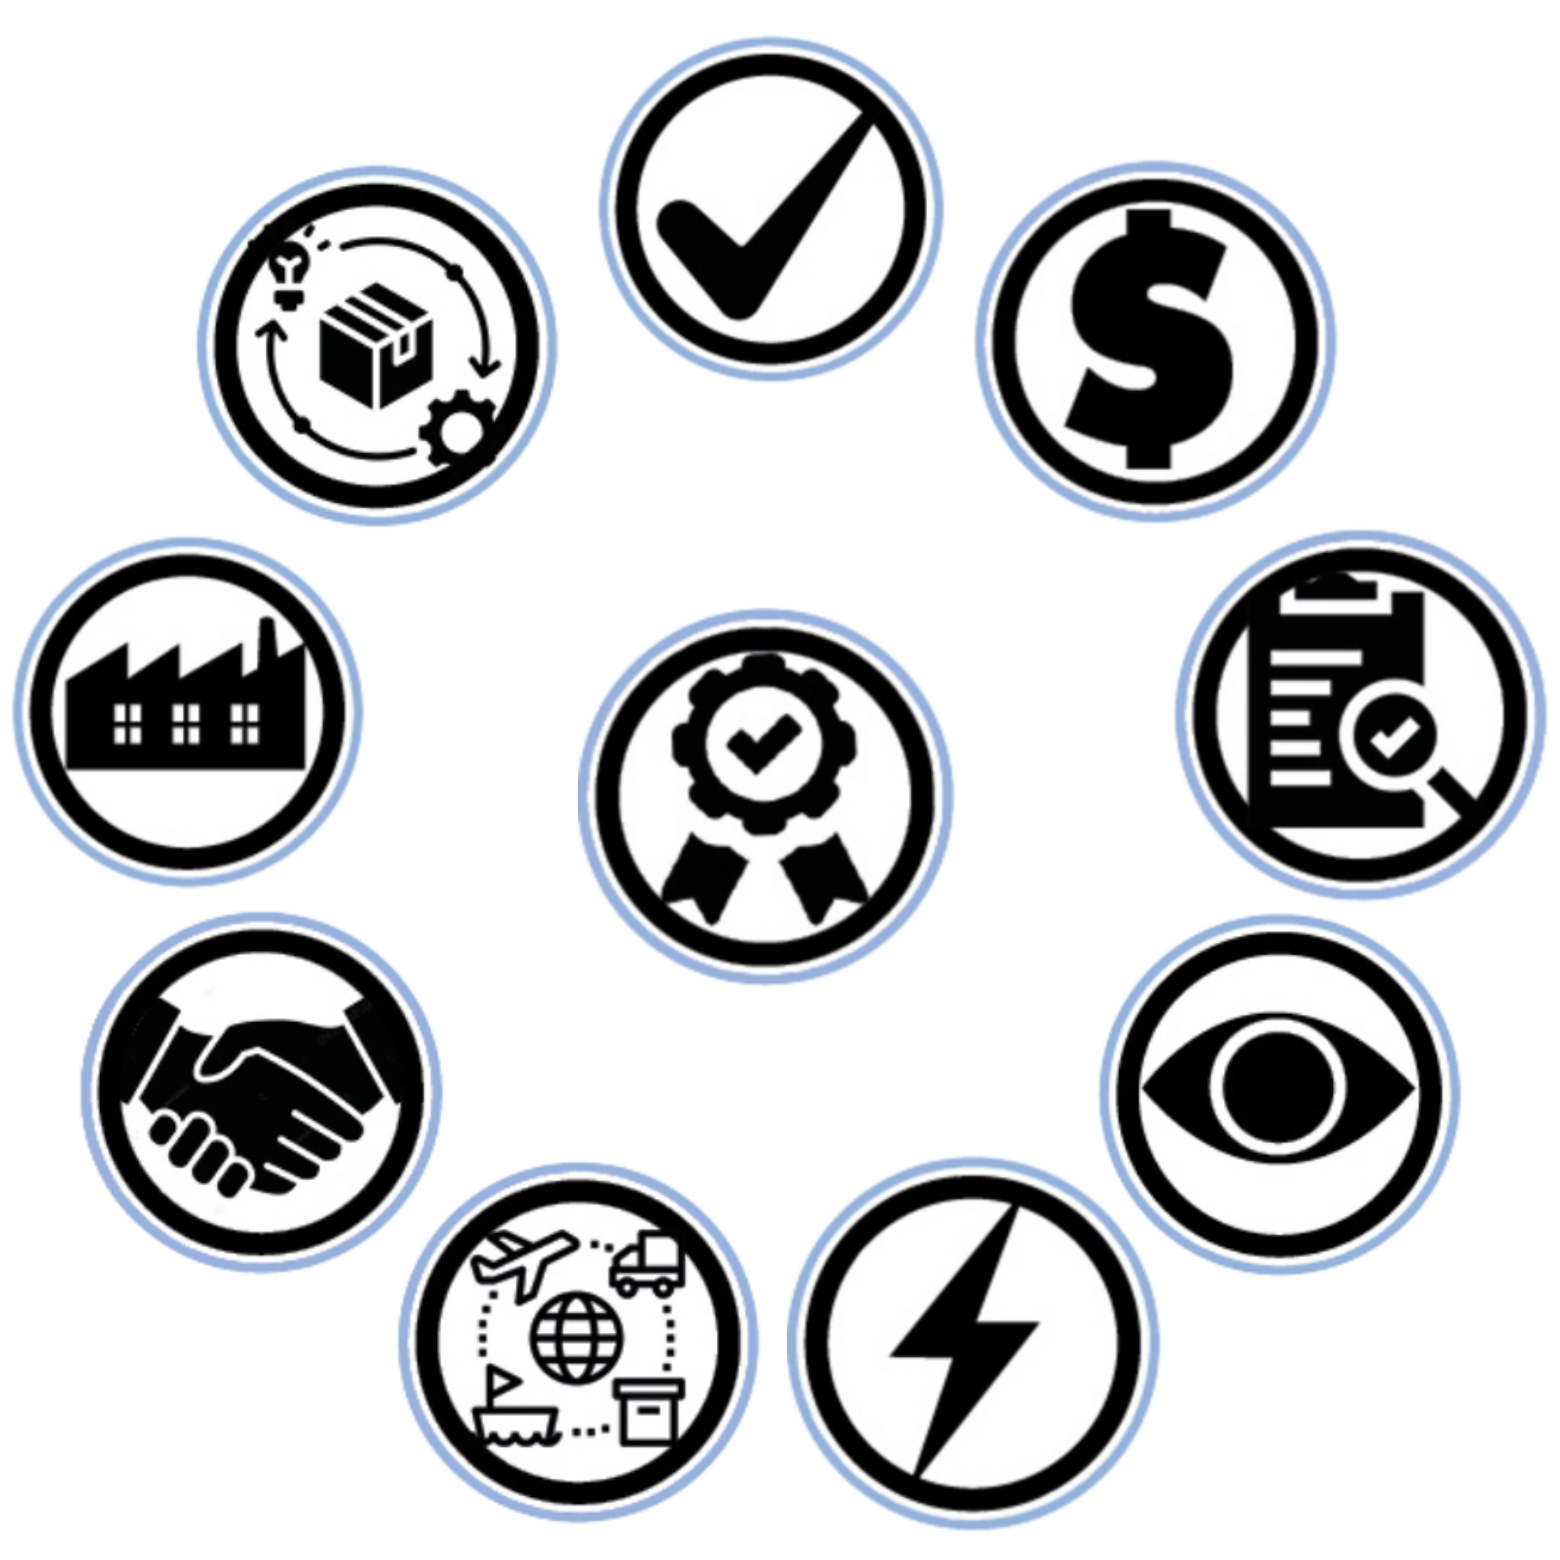 L’image est composée de 10 icones, une au centre et 9 autours. L’icône au centre est ronde et représentant une médaille. Autour il y a, dans le sens des aiguilles d’une montre, une icône ronde contenant un symbole de case à cochée, une icône ronde contenant un Dollar américain, une icône ronde représentant une fiche technique avec une loupe, une icône représentant un œil noir sur fond blanc, une icône représentant un éclair, une icône représentant un globe terrestre entouré d'un avion, d'un camion, d'un bateau, d'une boîte en carton, une icône représentant une poignée de main, une icône représentant une usine à charbon, noir sur fond blanc, et une icône contenant une boîte en carton autour de laquelle tourne une ampoule allumée et un engrenage dont la rotation est suggérée par deux flèches reliant les icônes autour de la boîte en carton.